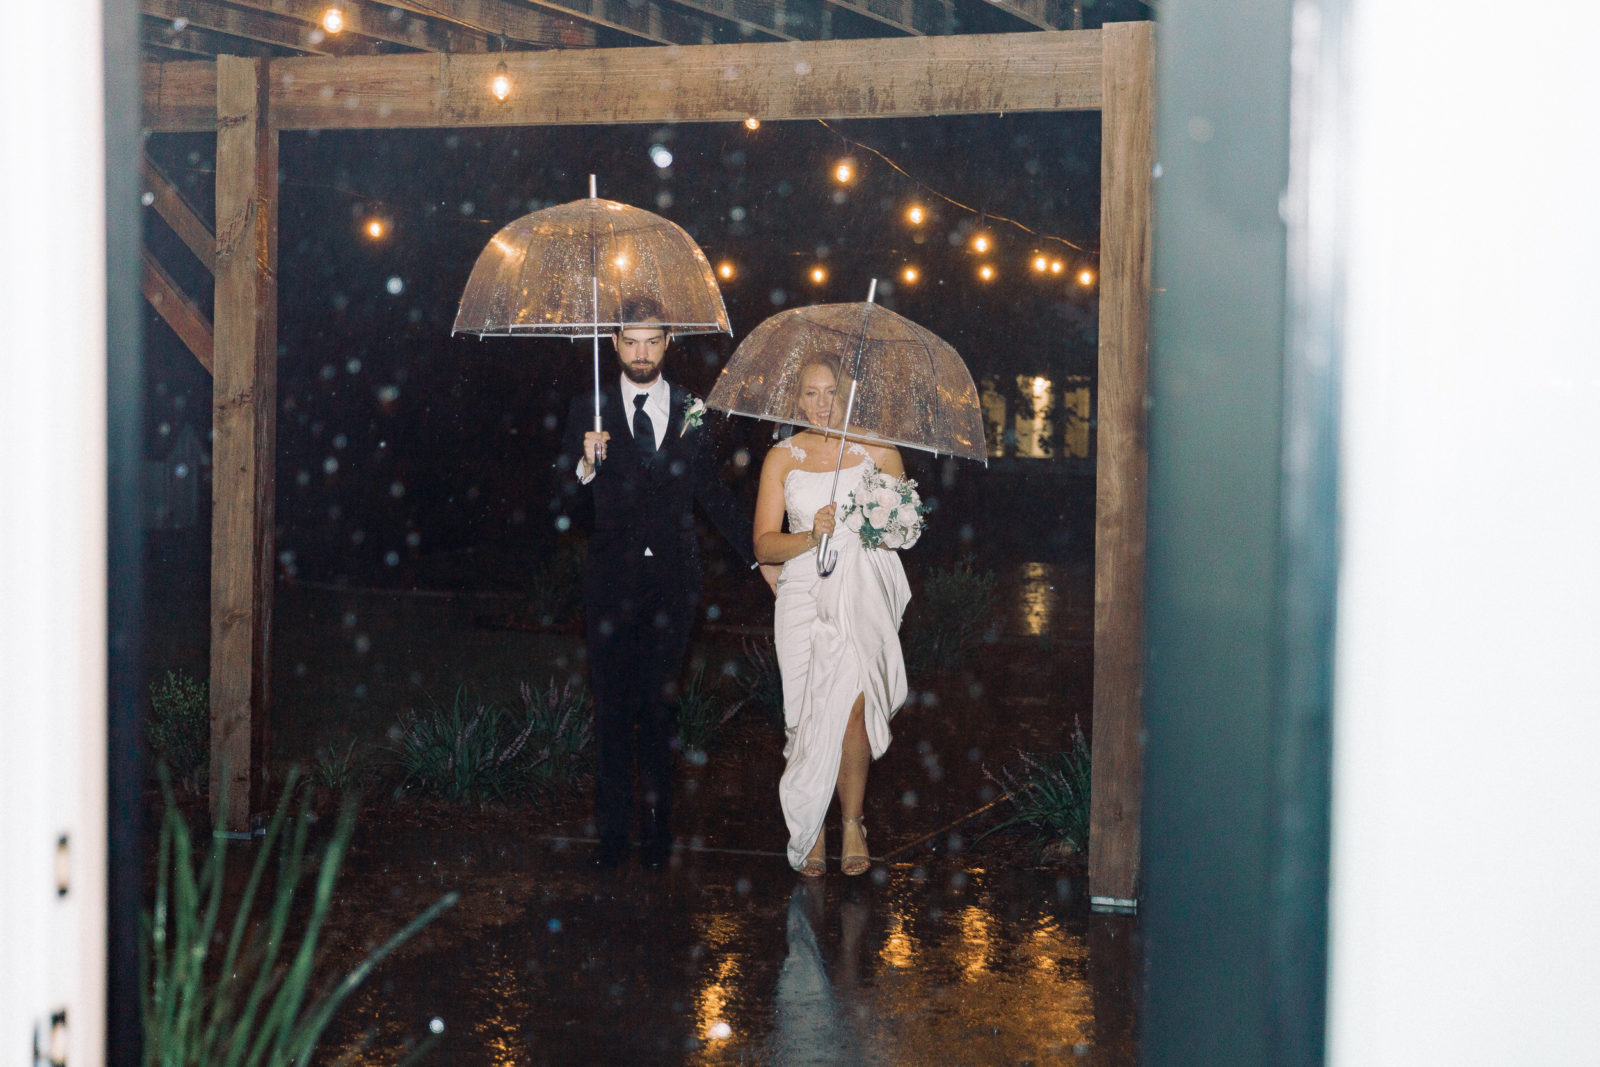 Bride and groom exit with umbrellas